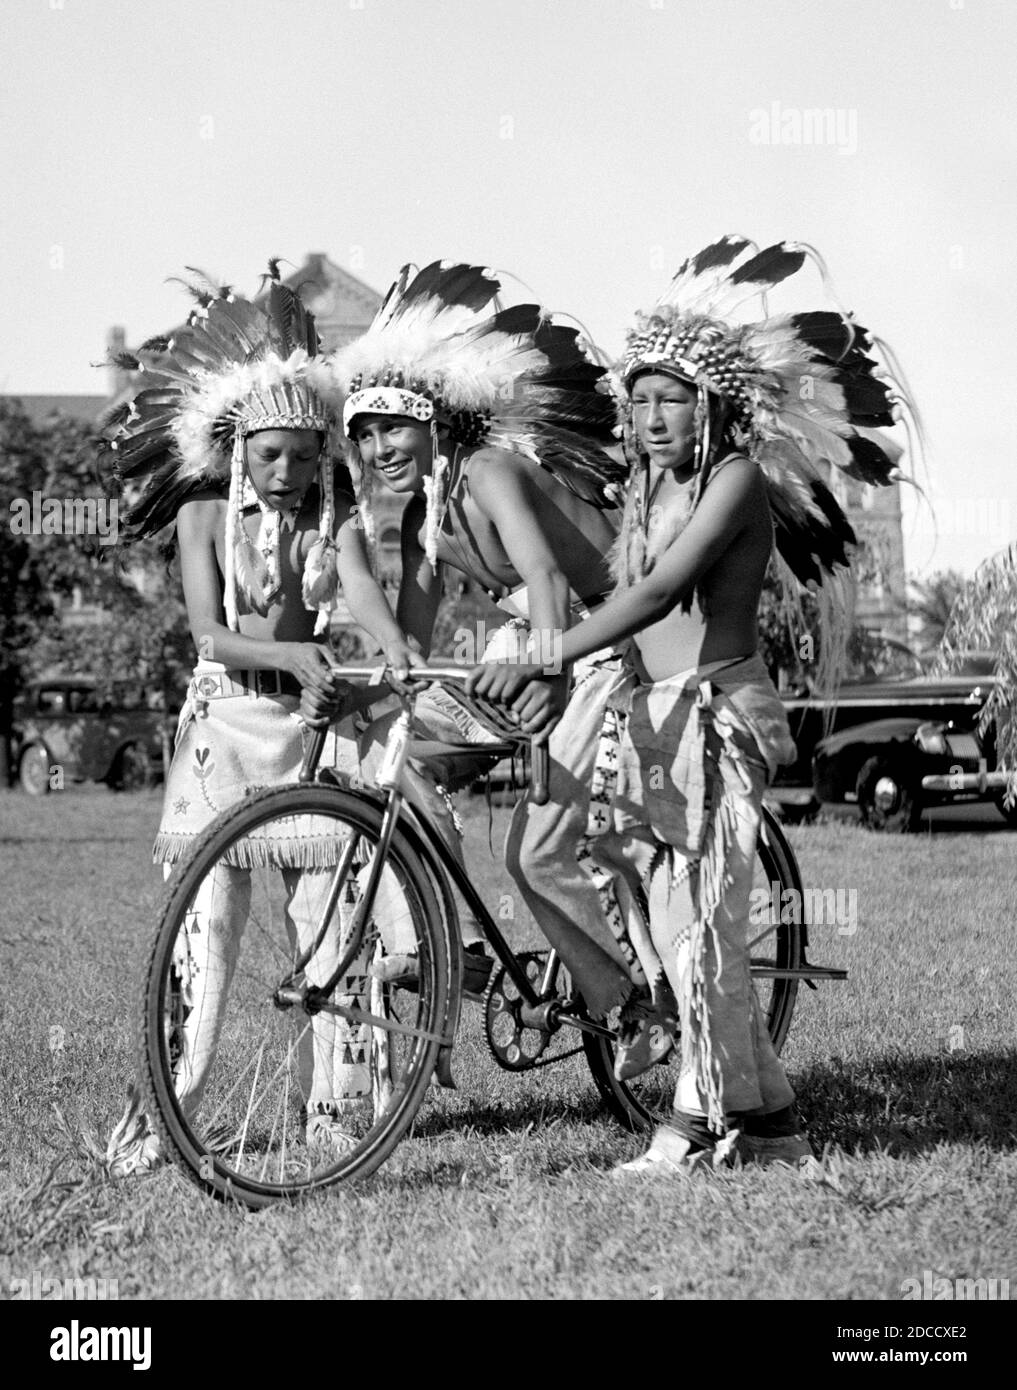 Les Américains autochtones partagent le vélo, 1938 Banque D'Images